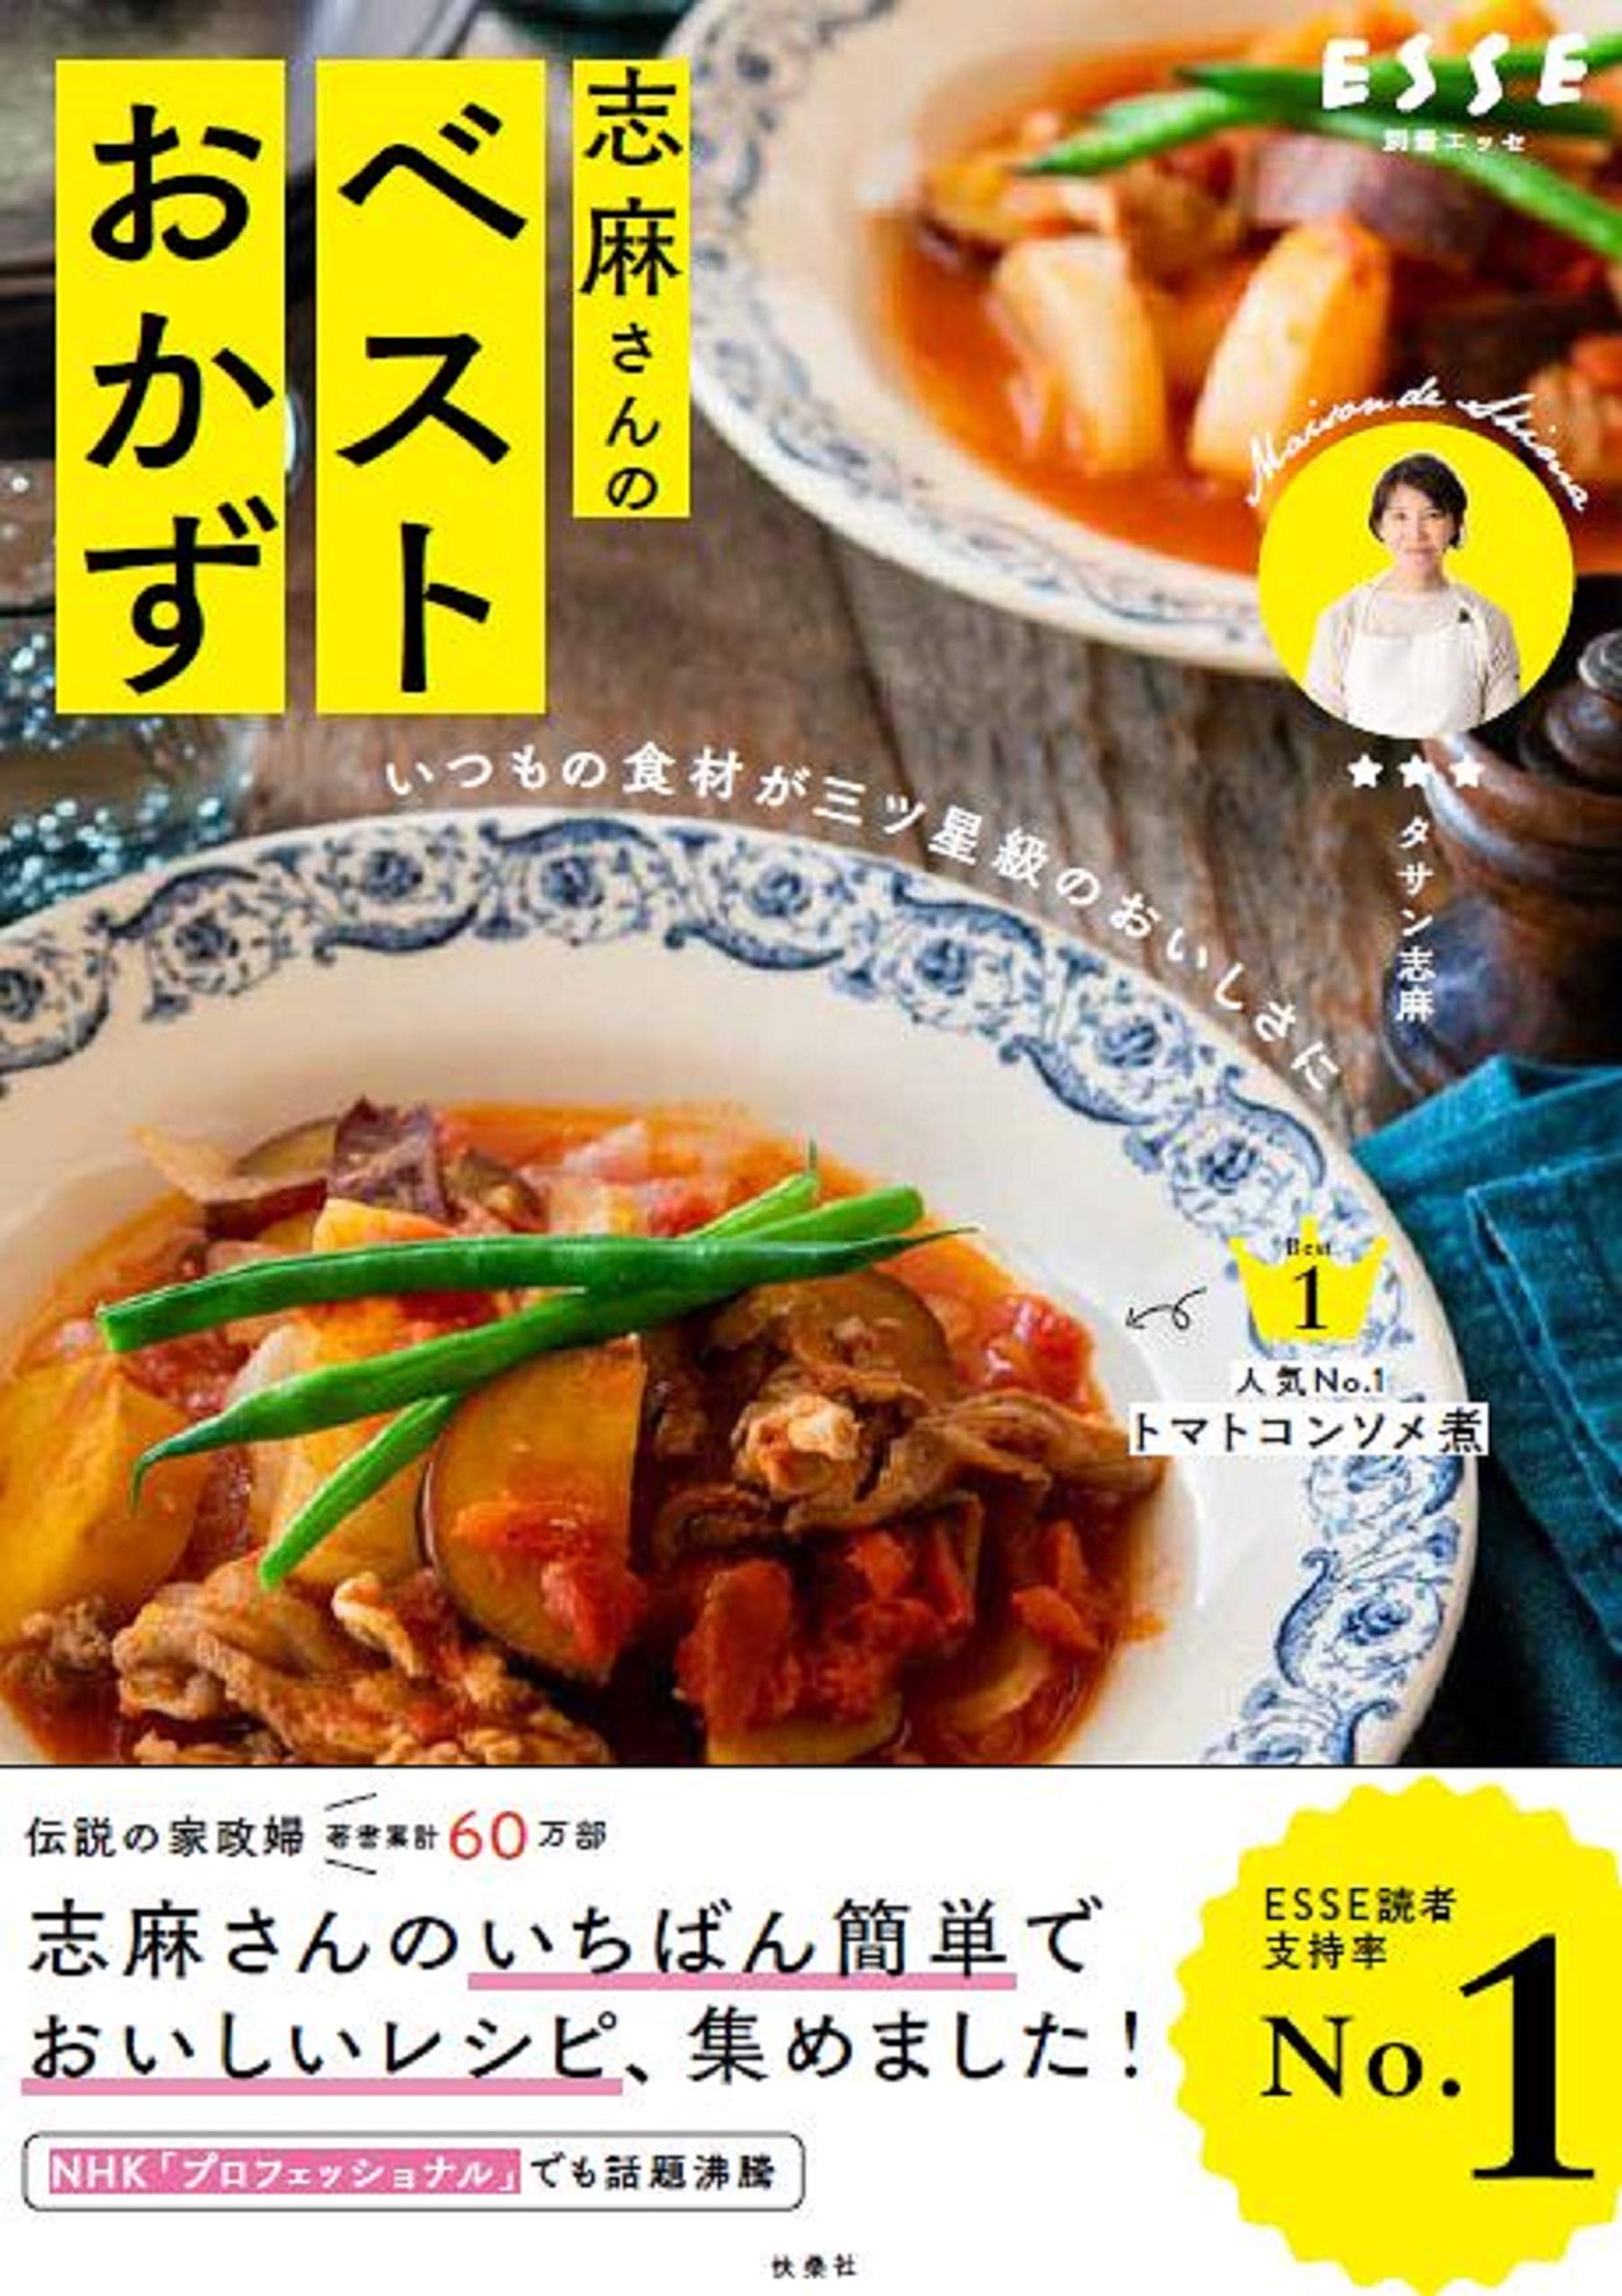 発売後即重版 いつもの食材が三ツ星級のおいしさに 伝説の家政婦 志麻さんによるベストレシピ本が発売 株式会社扶桑社のプレスリリース